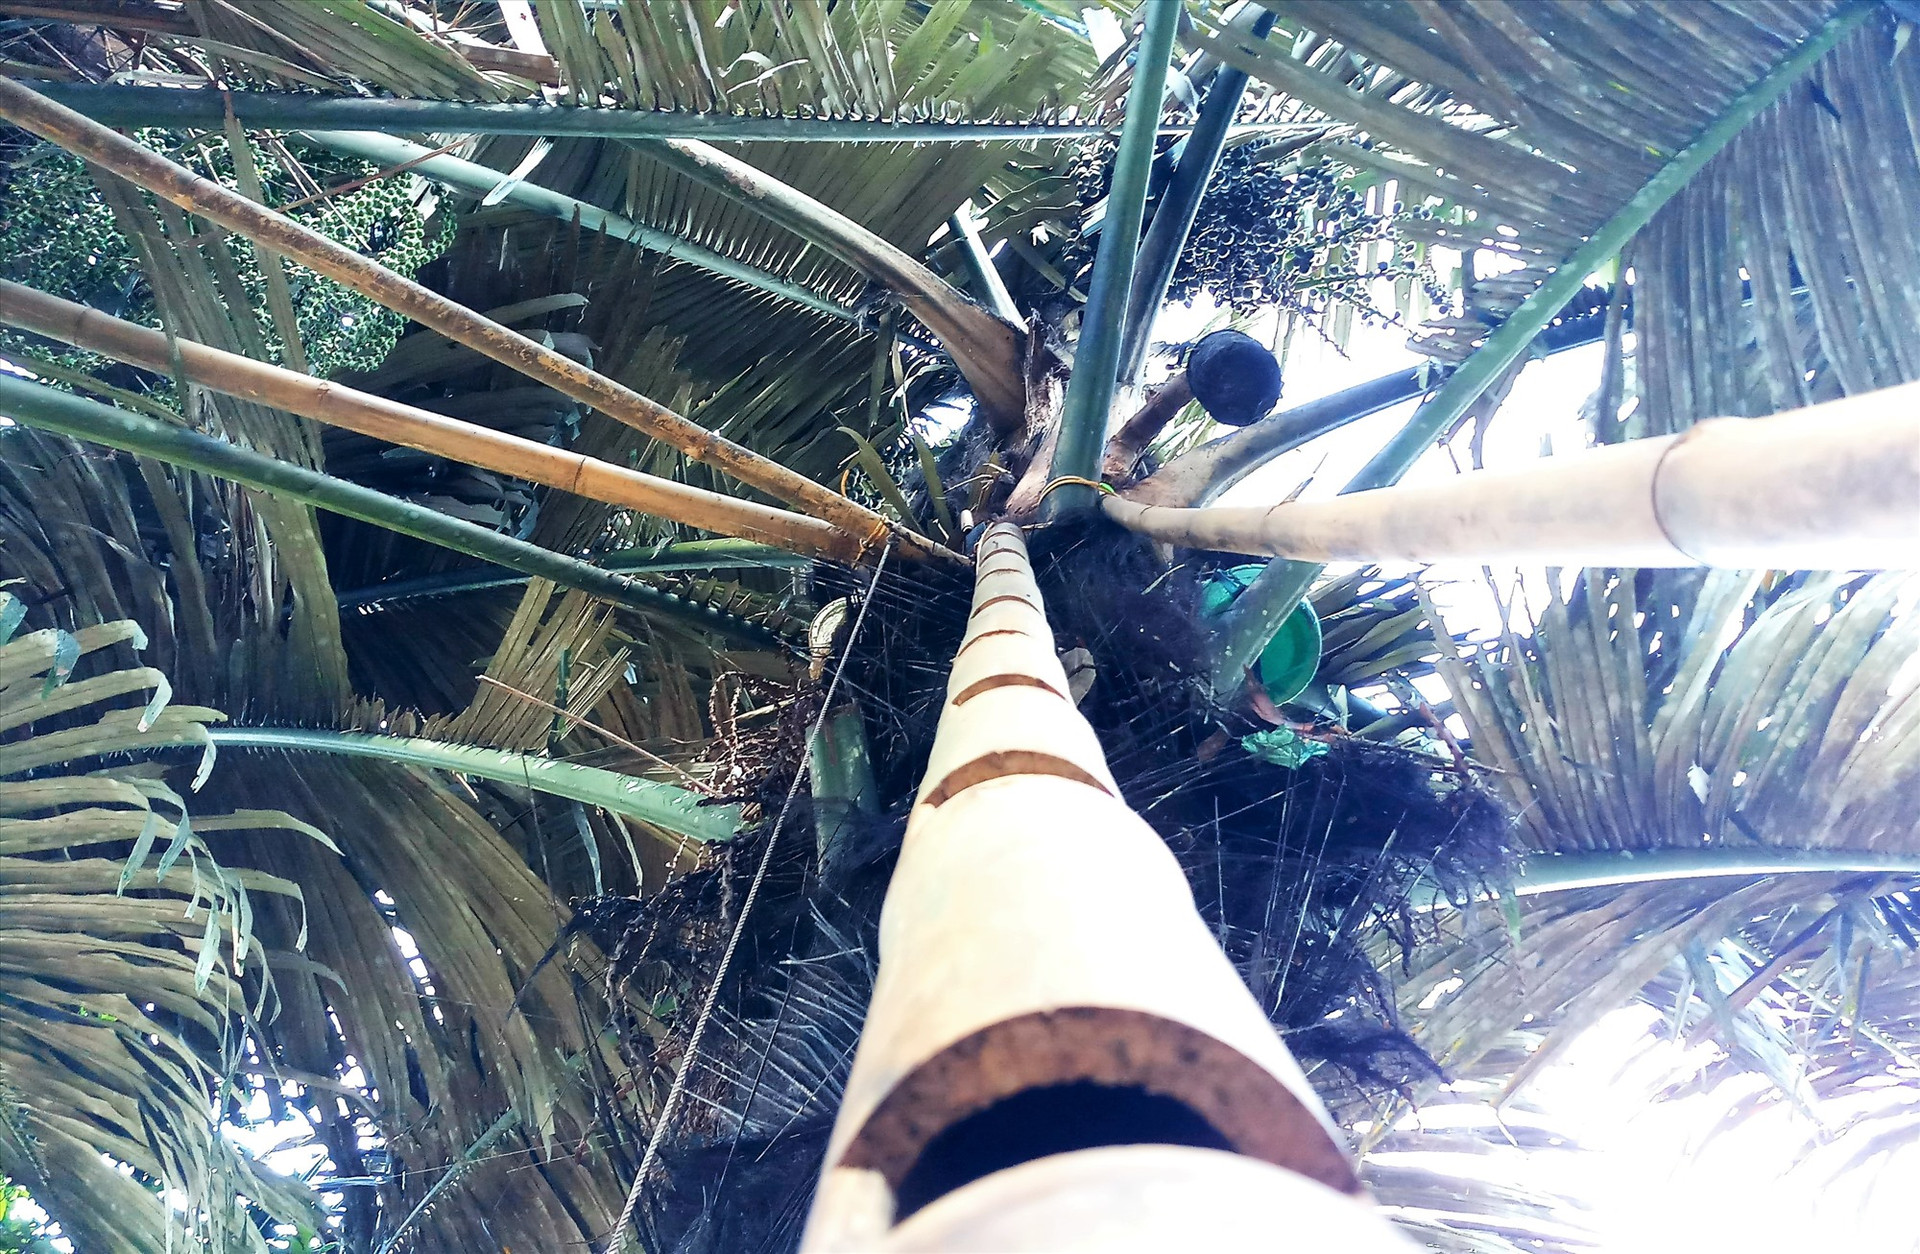 Trên những chùm cây tà vạc, người vùng cao thường đặt chiếc thang để leo khai thác “rượu trời”. Ảnh: Đ.N